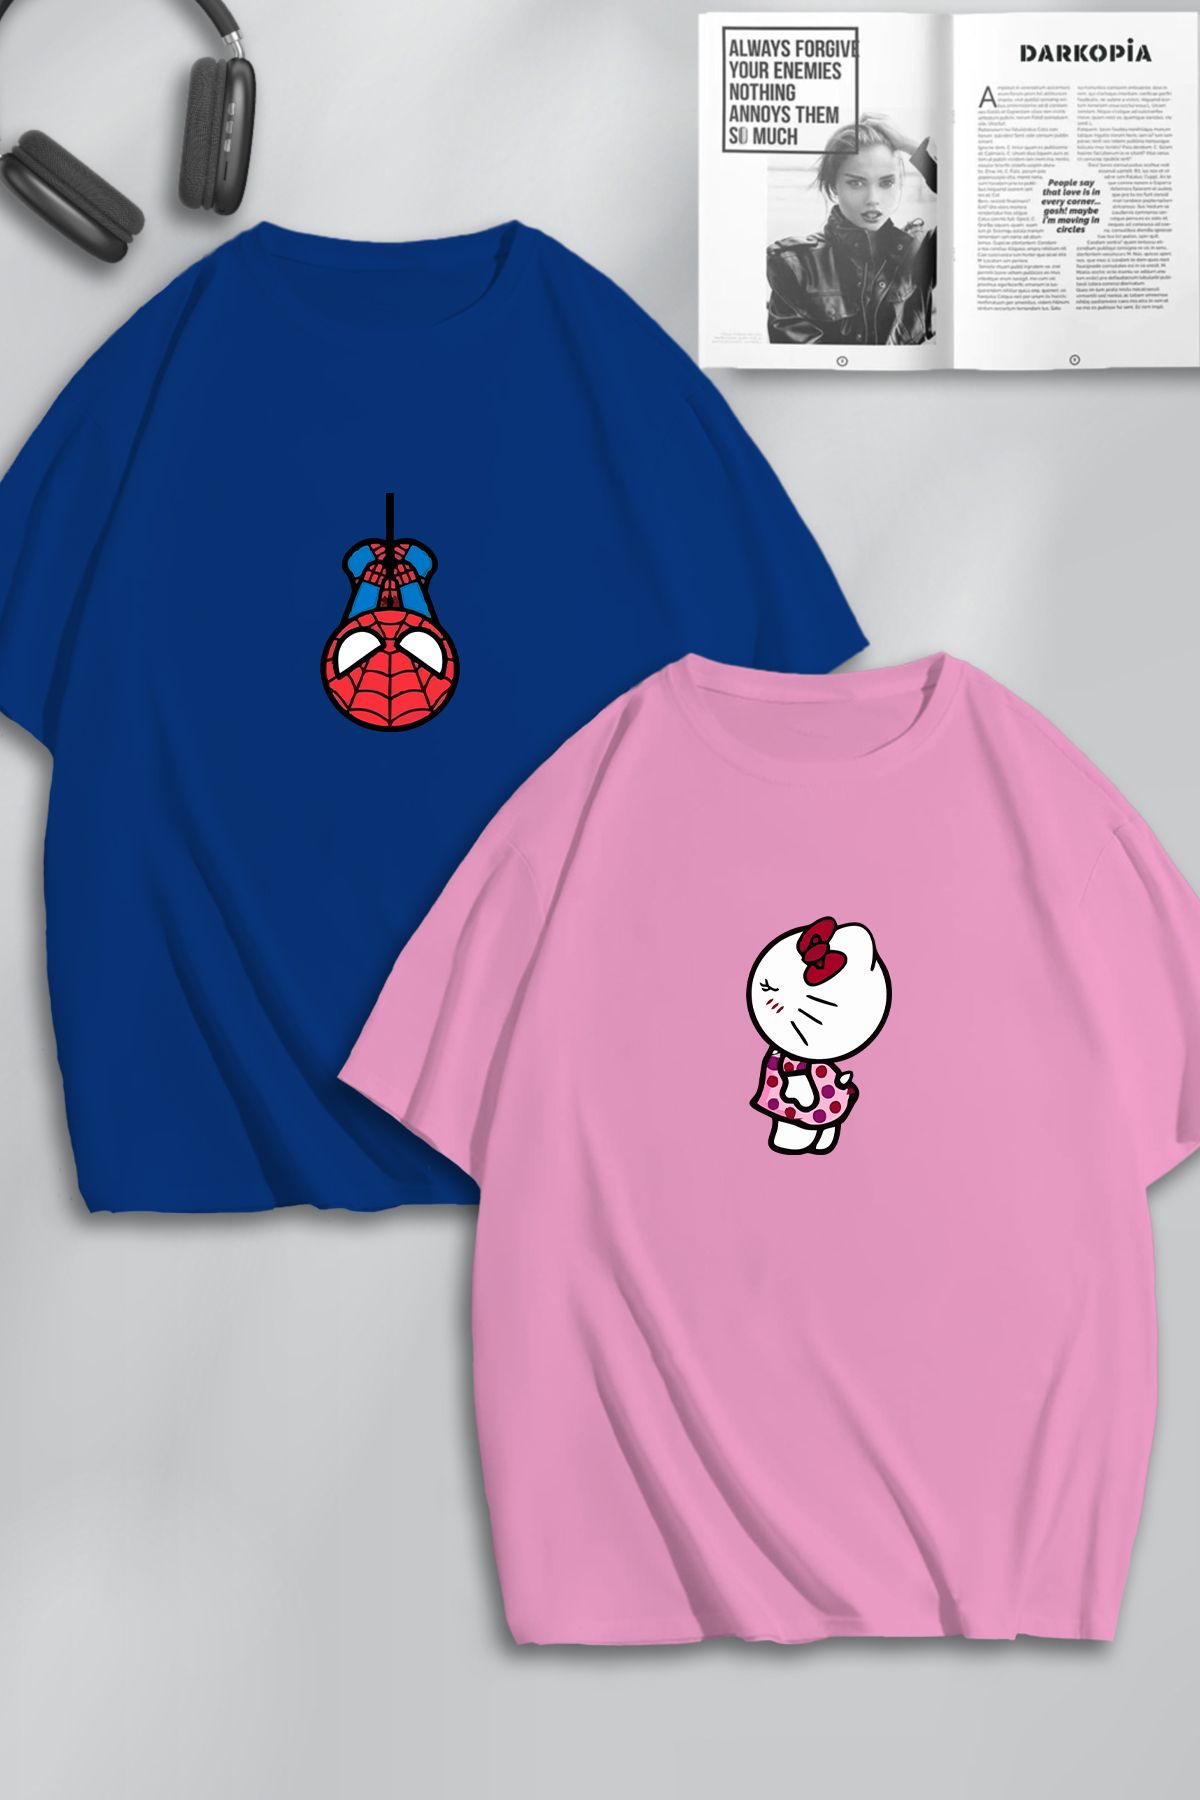 darkopia Unisex Kadın Erkek Hello Kitty Spiderman Baskılı Sevgili Çift Kombini Tasarım Oversize Tshirt 2'li